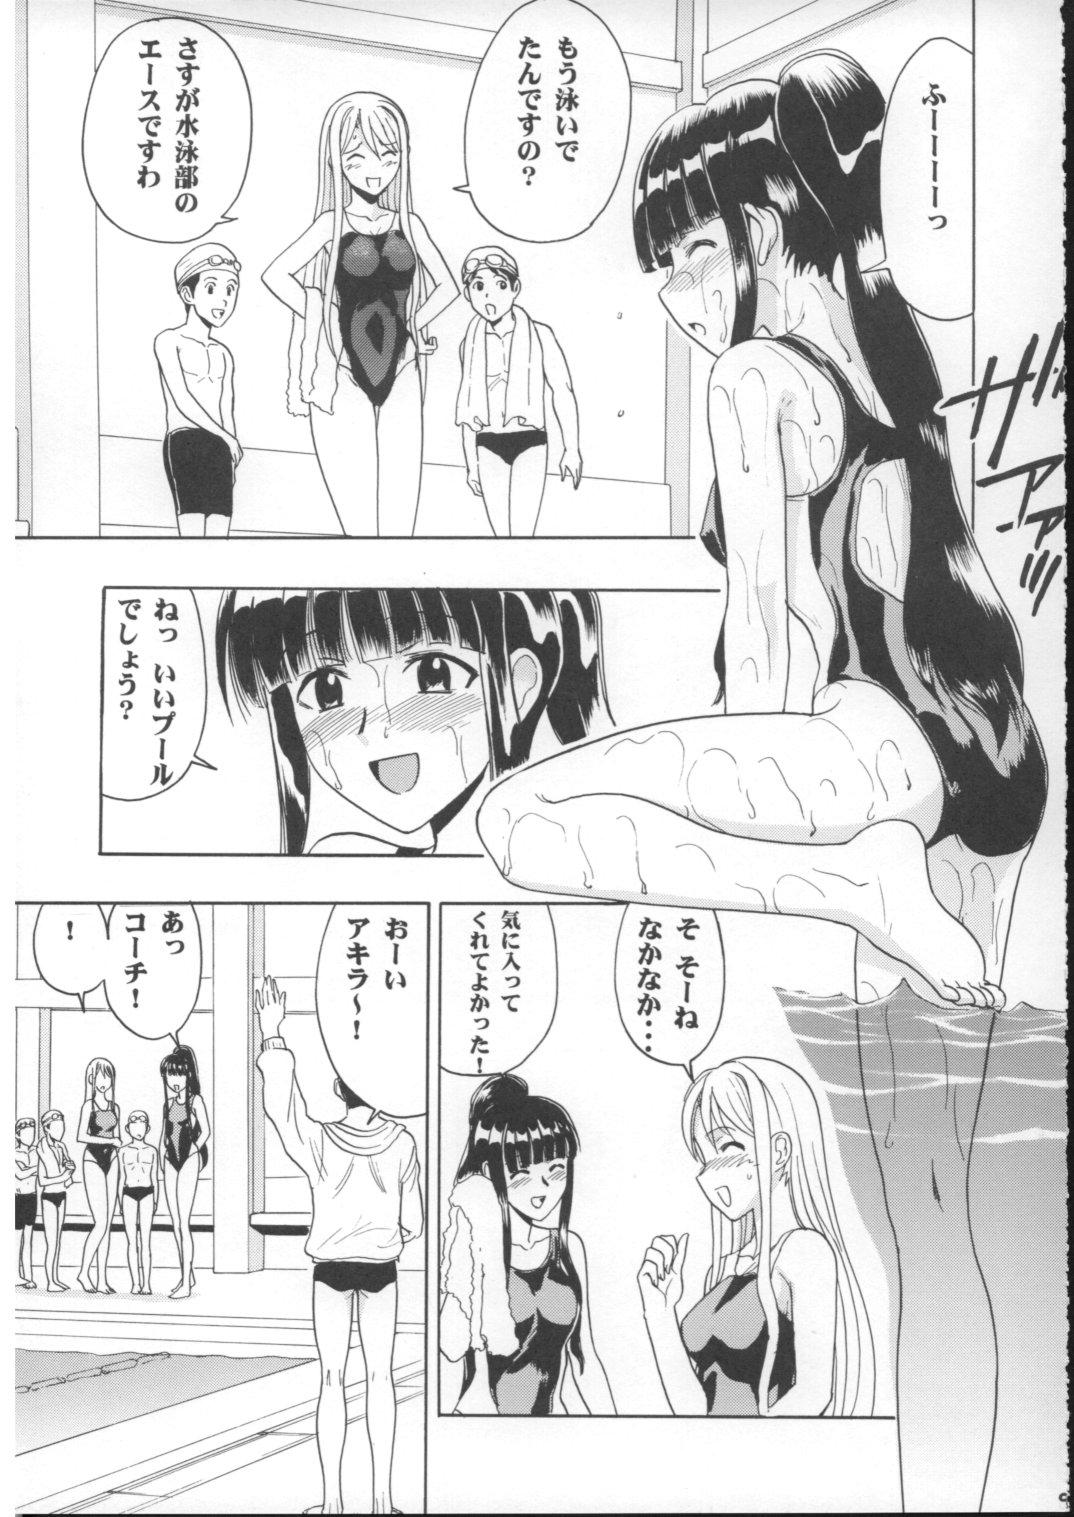 Groping Mahomizu - Mahou sensei negima Gonzo - Page 8